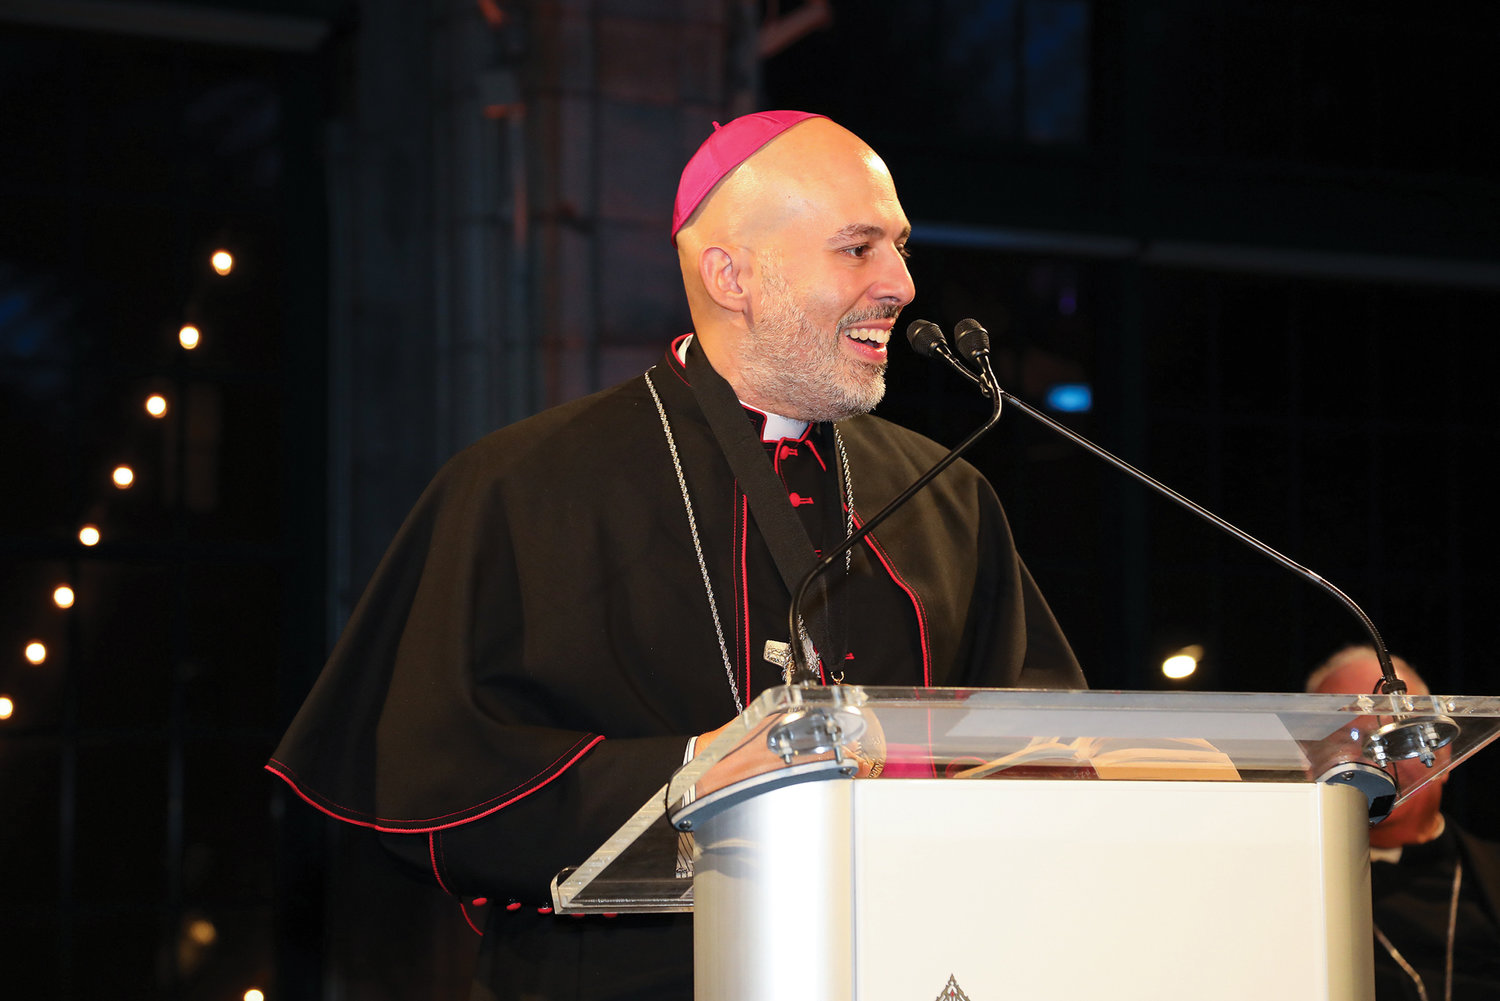 El obispo auxiliar Joseph A. Espaillat pronuncia su discurso de aceptación el 7 de noviembre en la cena de entrega de premios del Fondo de Becas Pierre Toussaint en Manhattan.